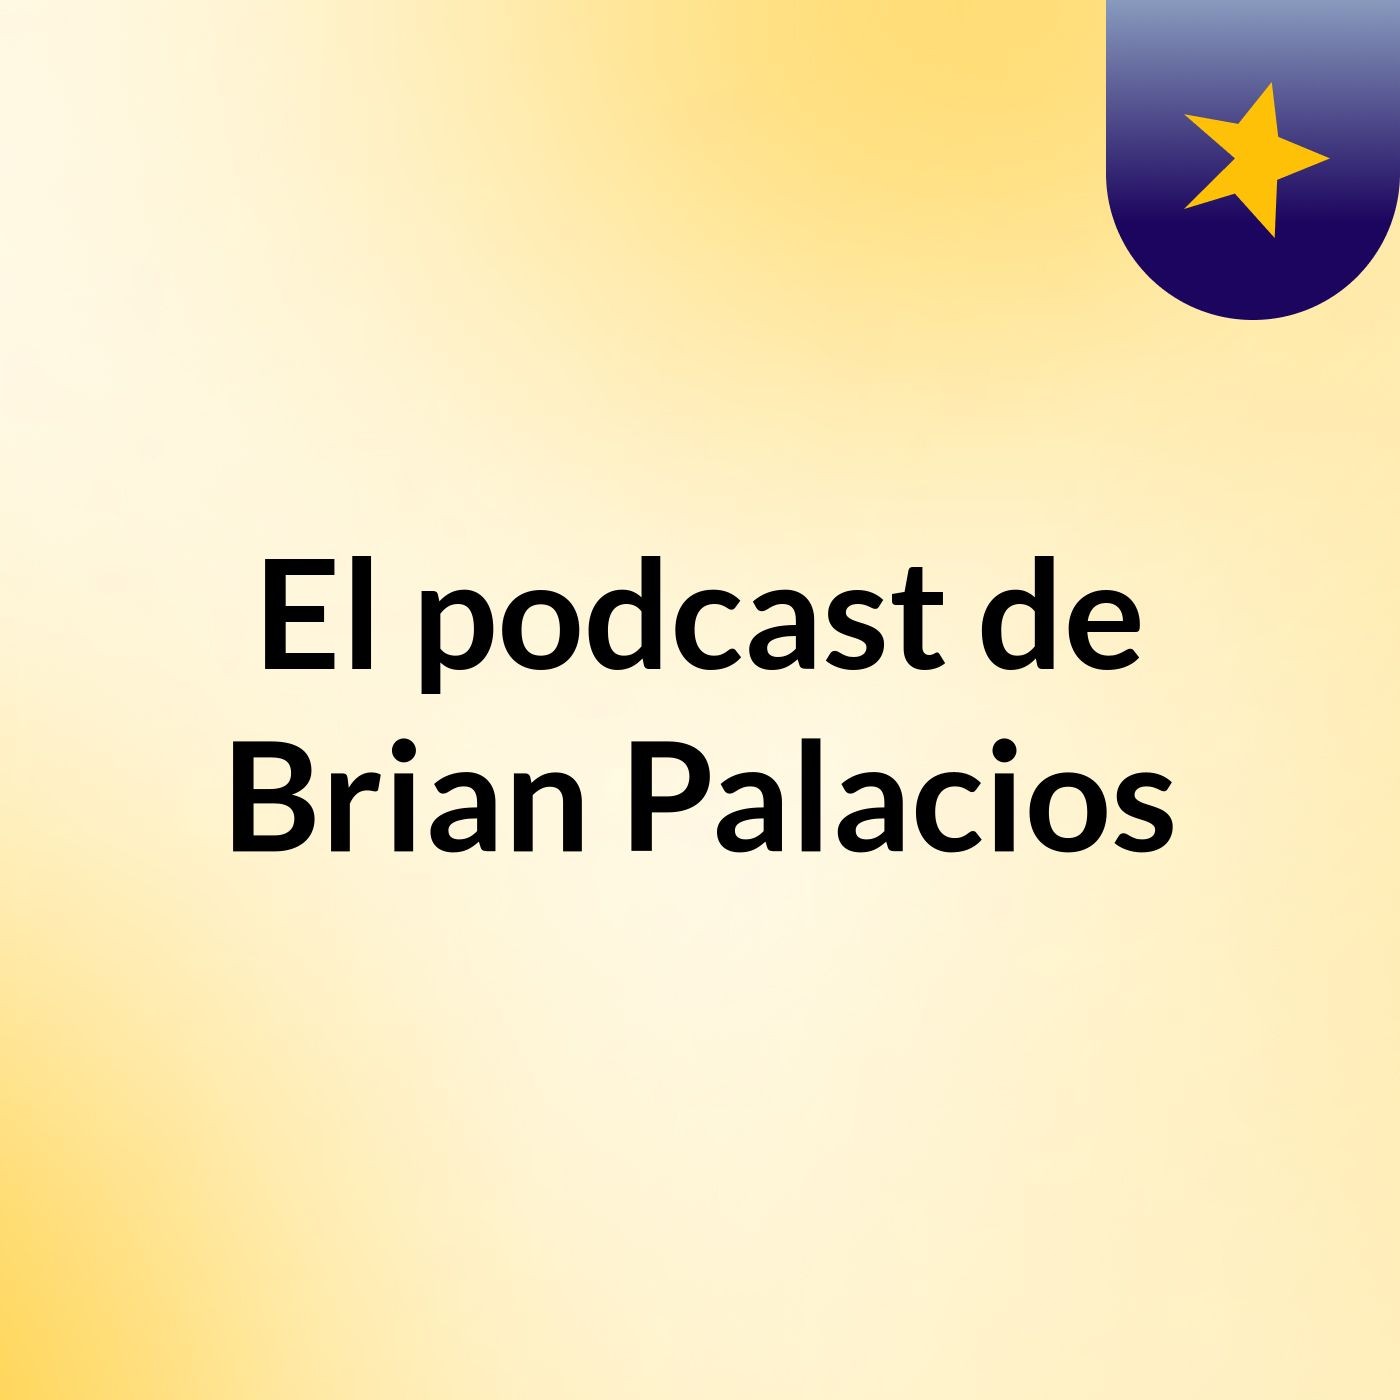 El podcast de Brian Palacios